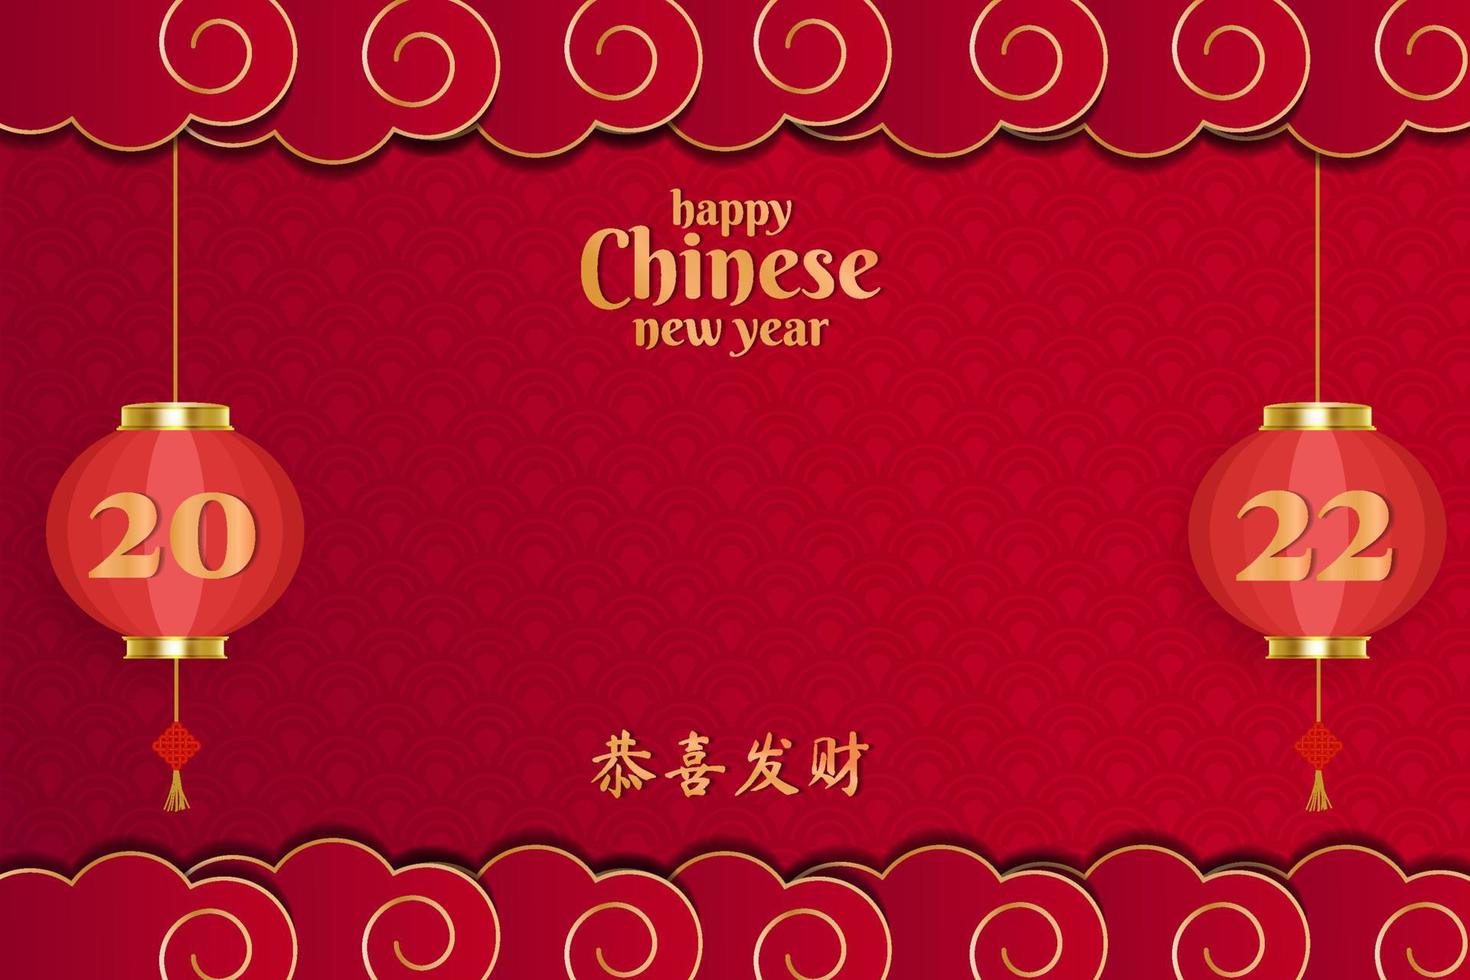 2022 gelukkig chinees nieuwjaar met wolk en lantaarn op rode achtergrond met kopieerruimte. chinees nieuwjaar vector ontwerp illustratie